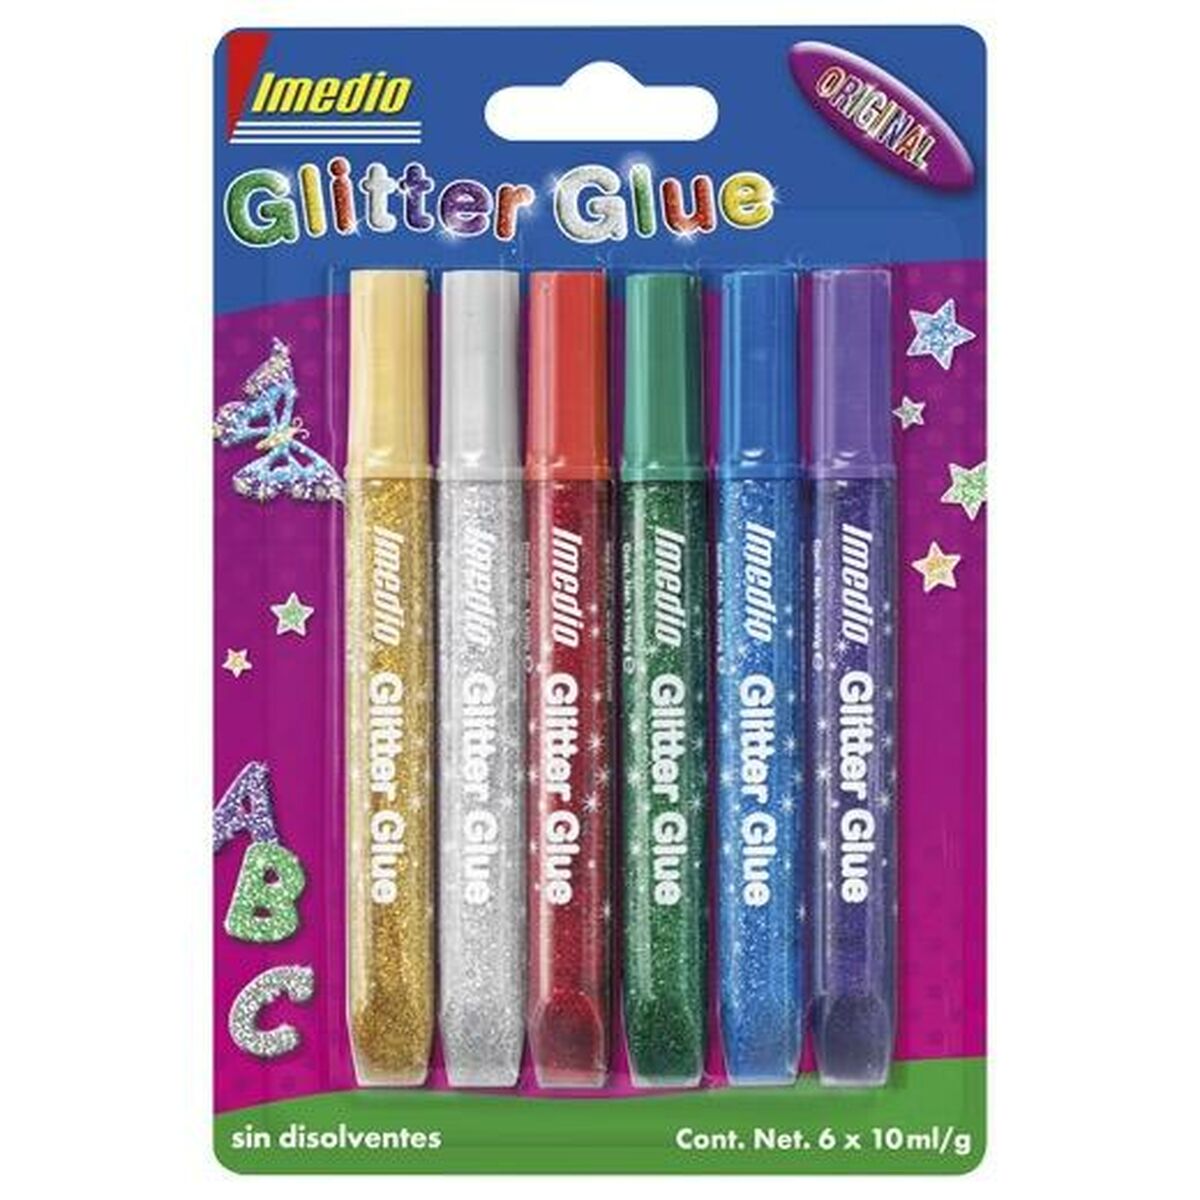 Gel glue Imedio Glitter Glue Multicolour (10Units)